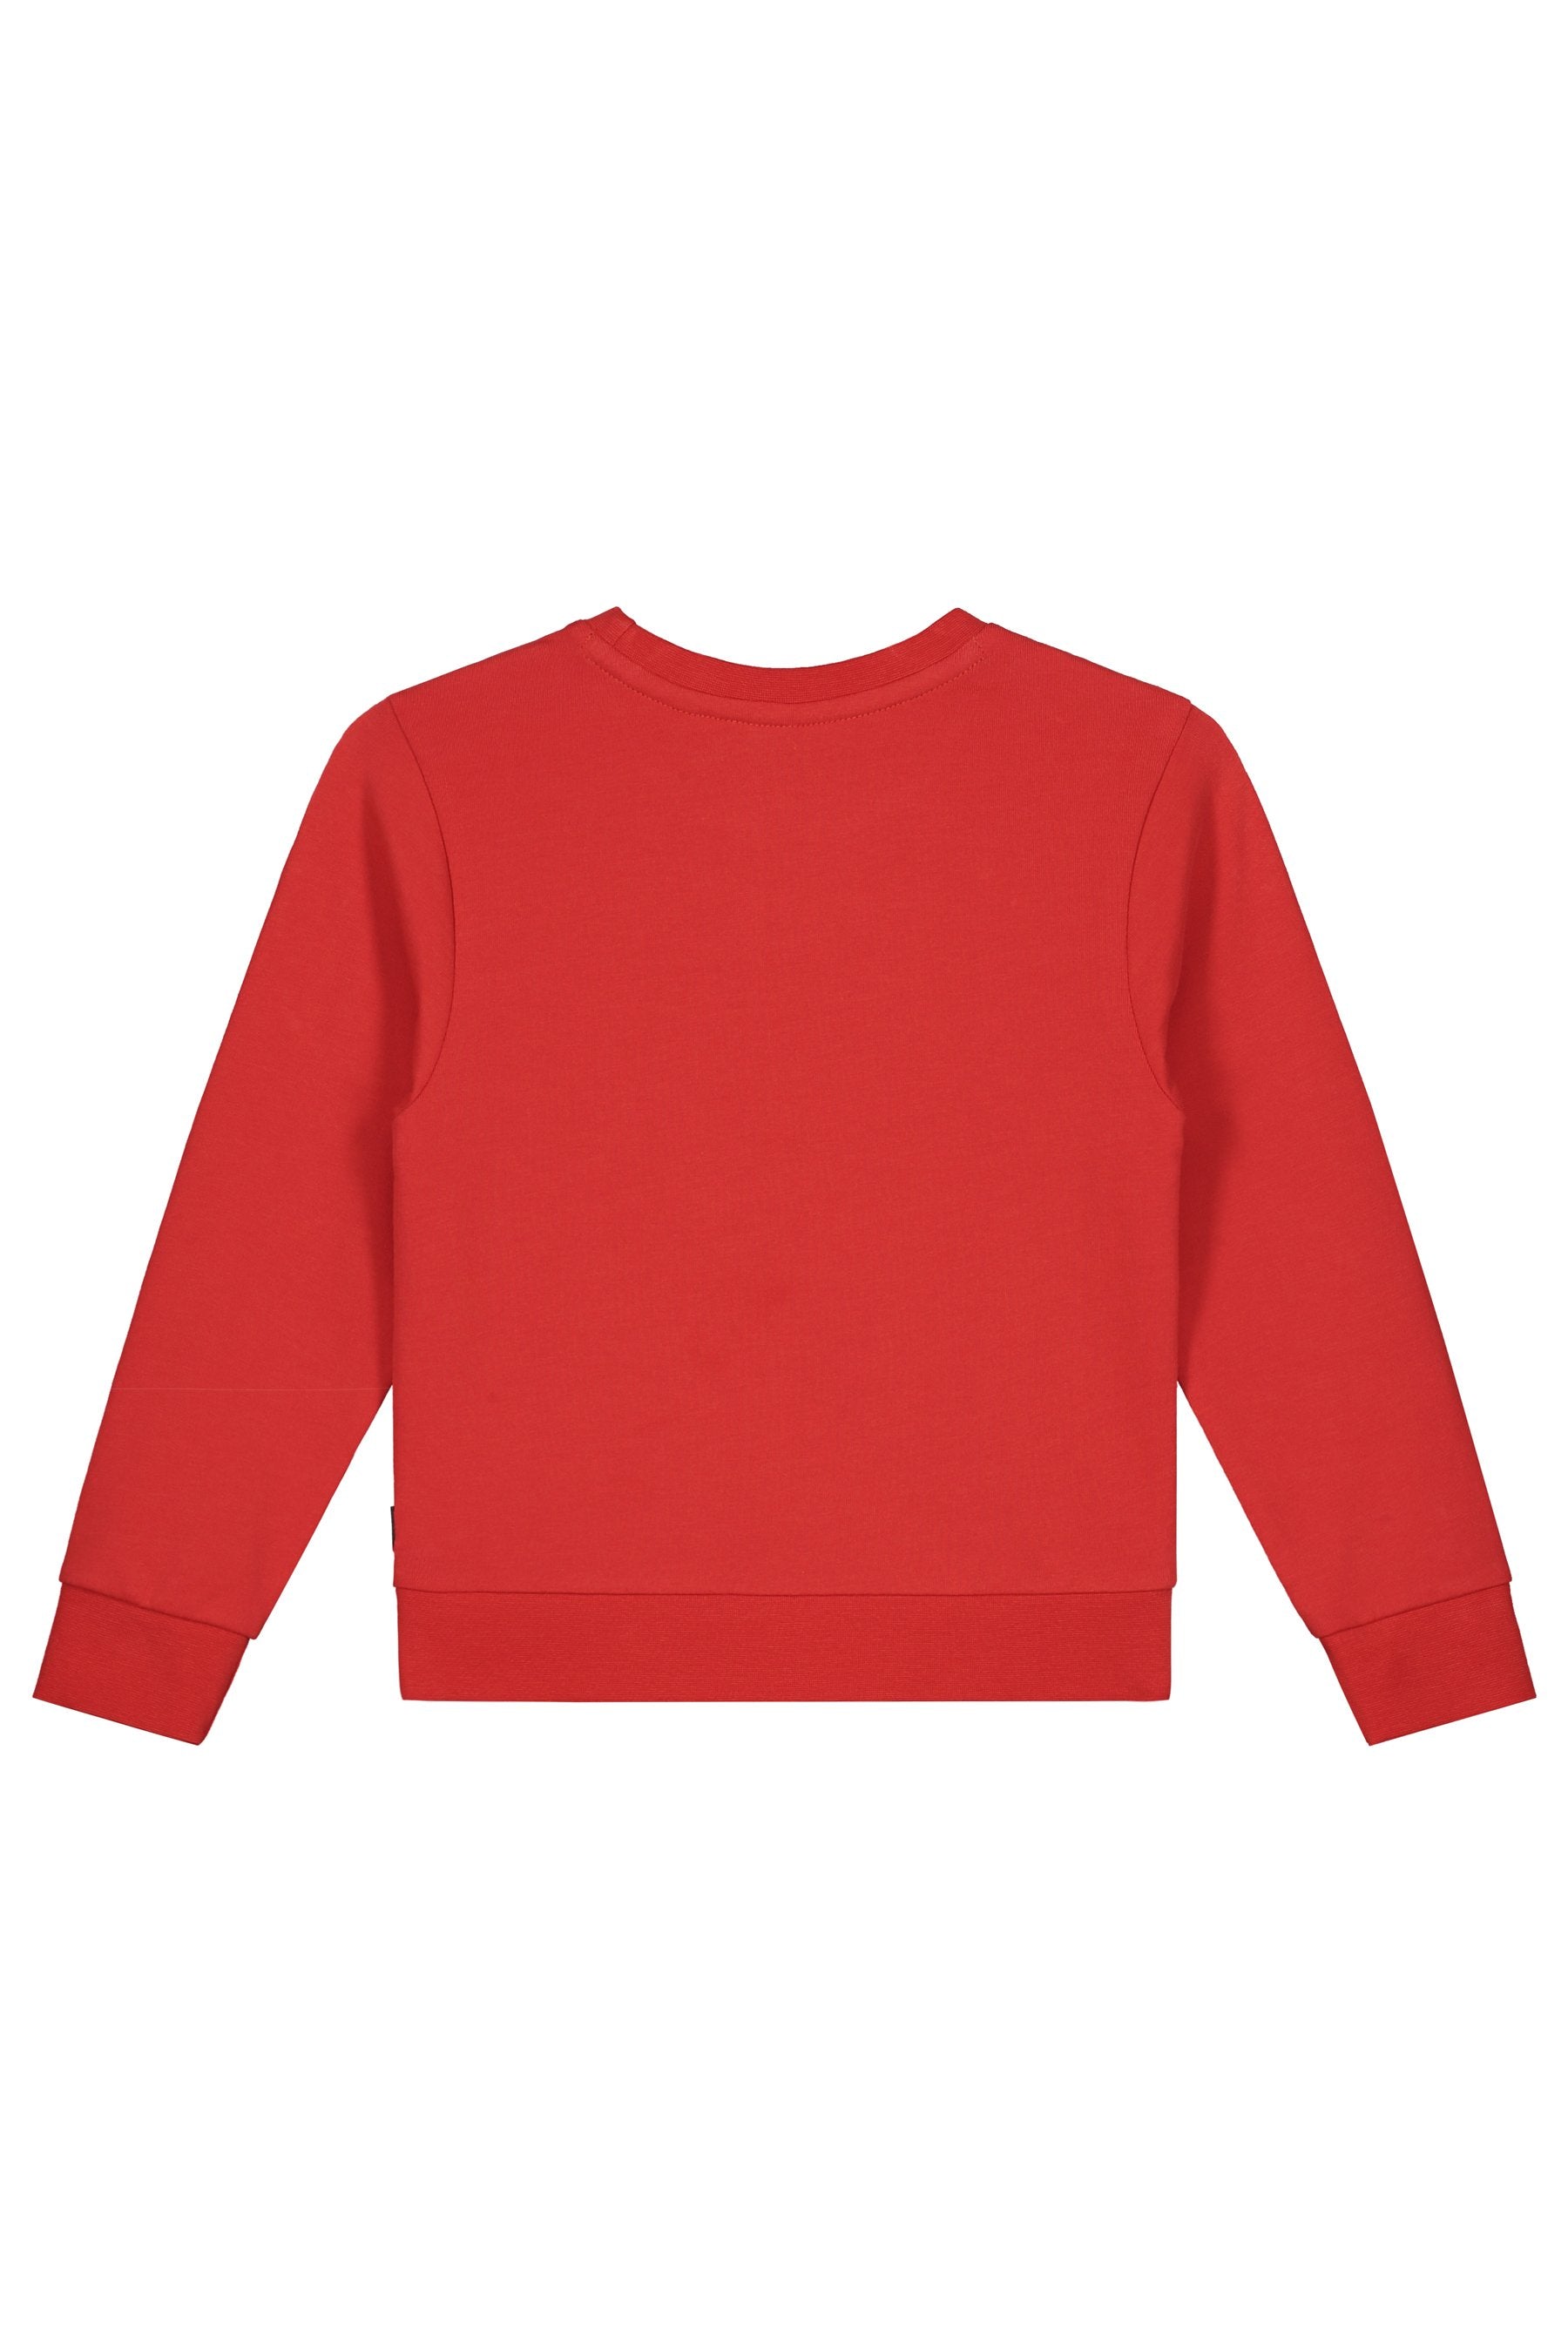 Jongens Sweater van Little Levv in de kleur Red in maat 116.